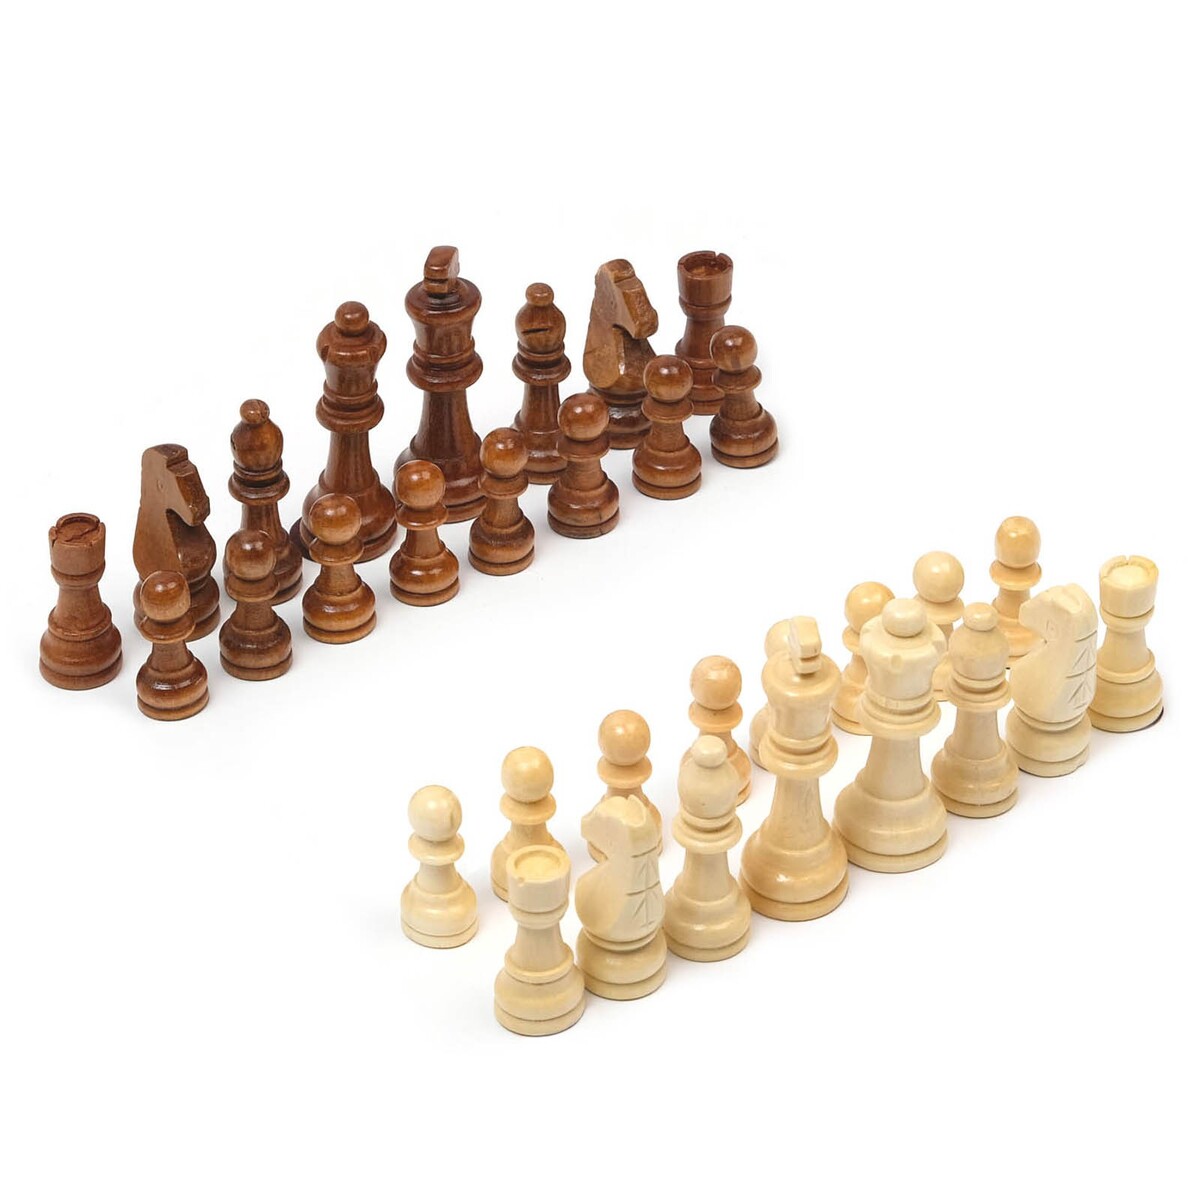 Шахматные фигуры, король h-9 см, пешка h-4 см железный король